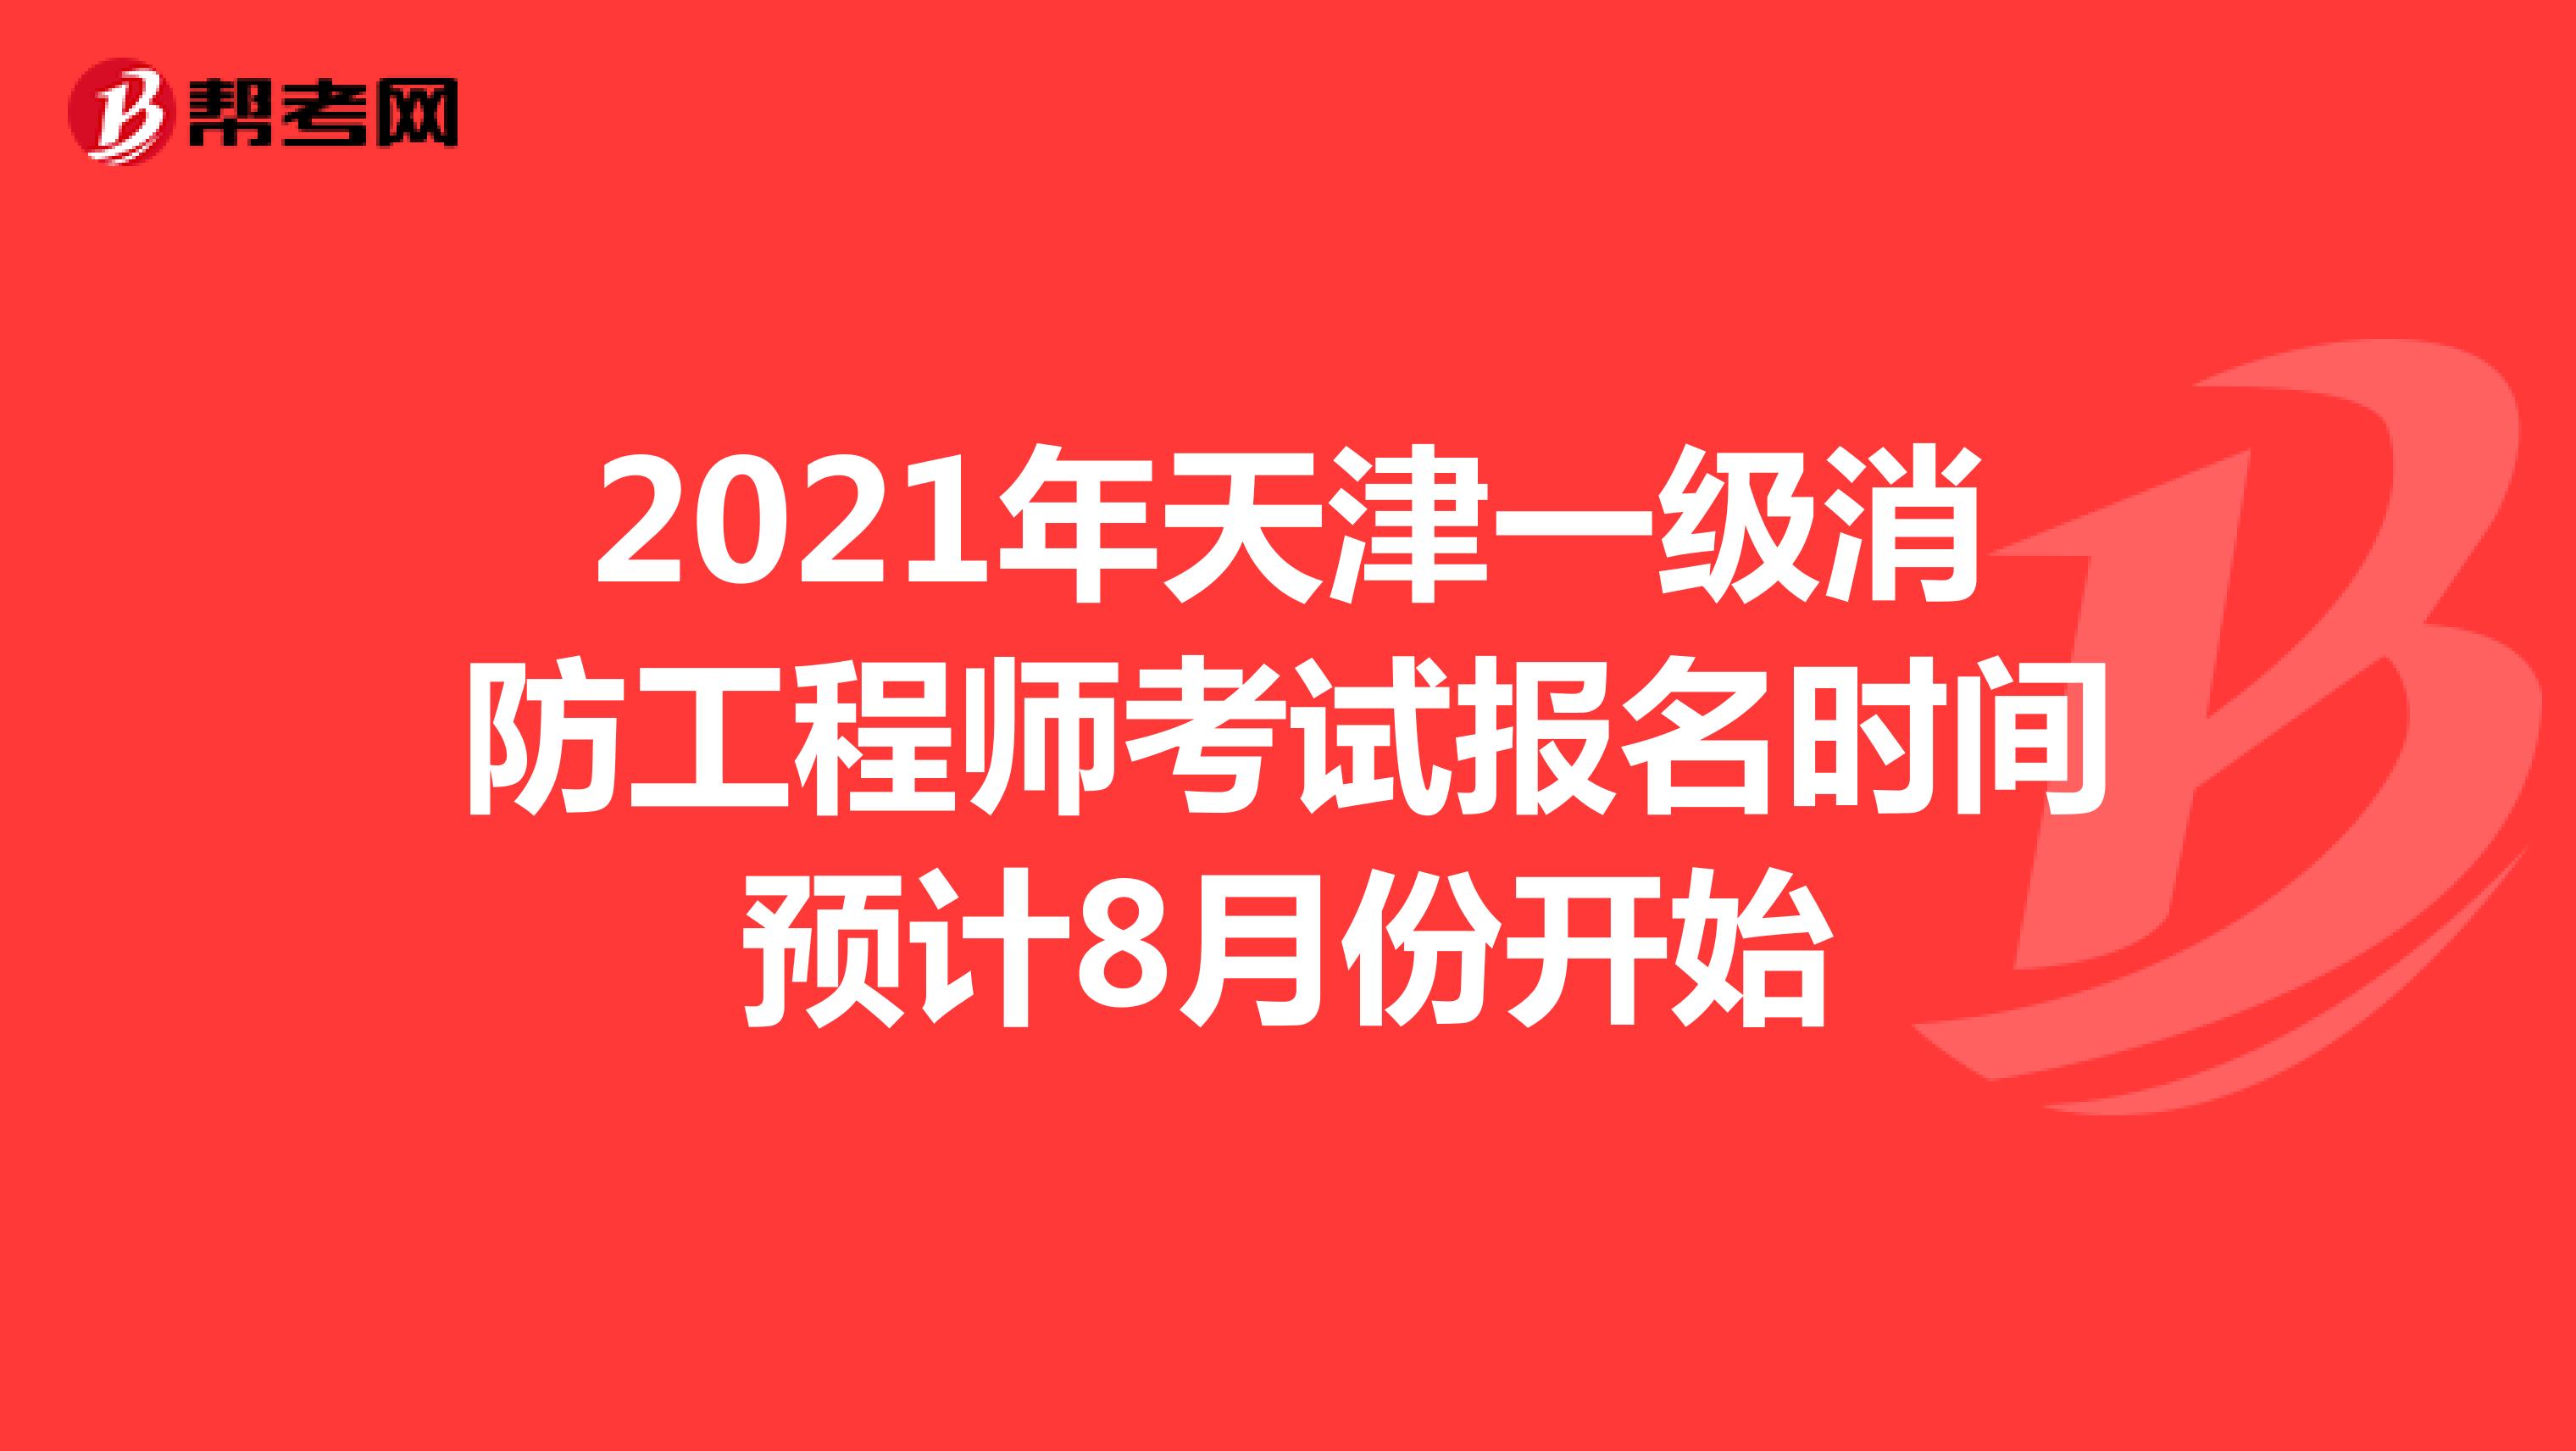 2021年天津一级消防工程师考试报名时间预计8月份开始